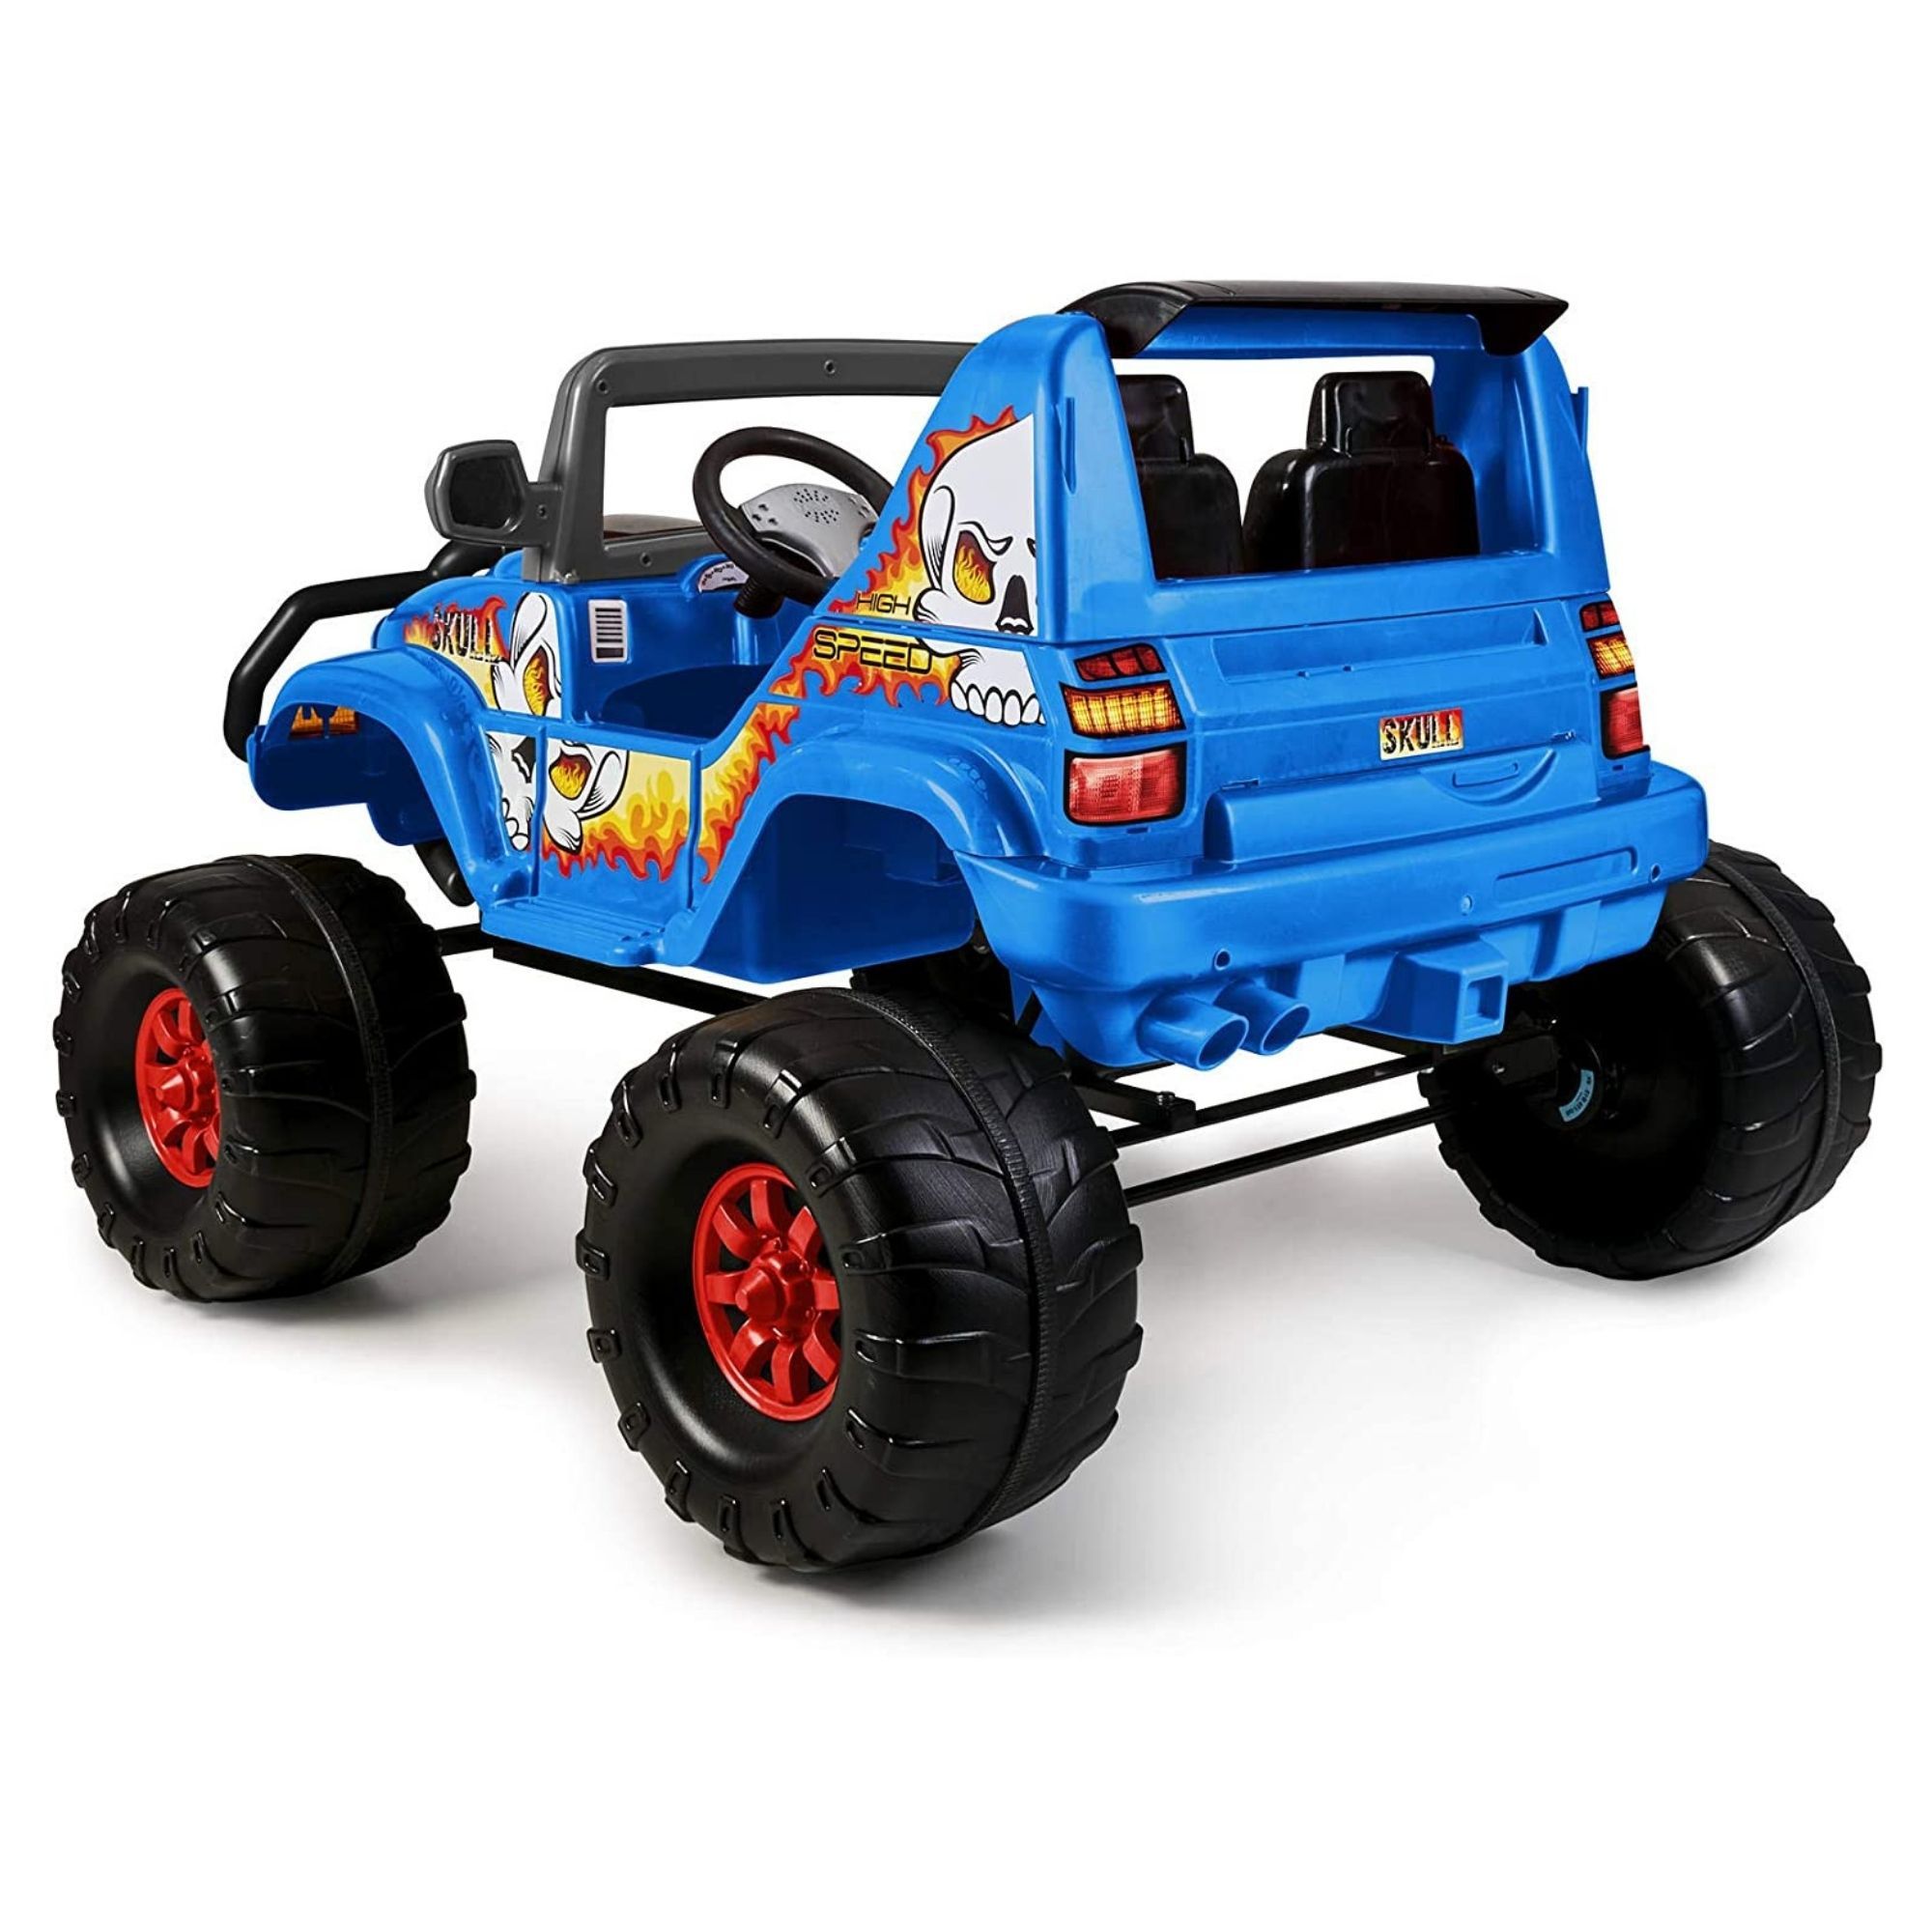 ⇒ Carro compra infantil rolser monster azul ▷ Precio. ▷ Comprar con los  Mejores Precios. Ofertas online